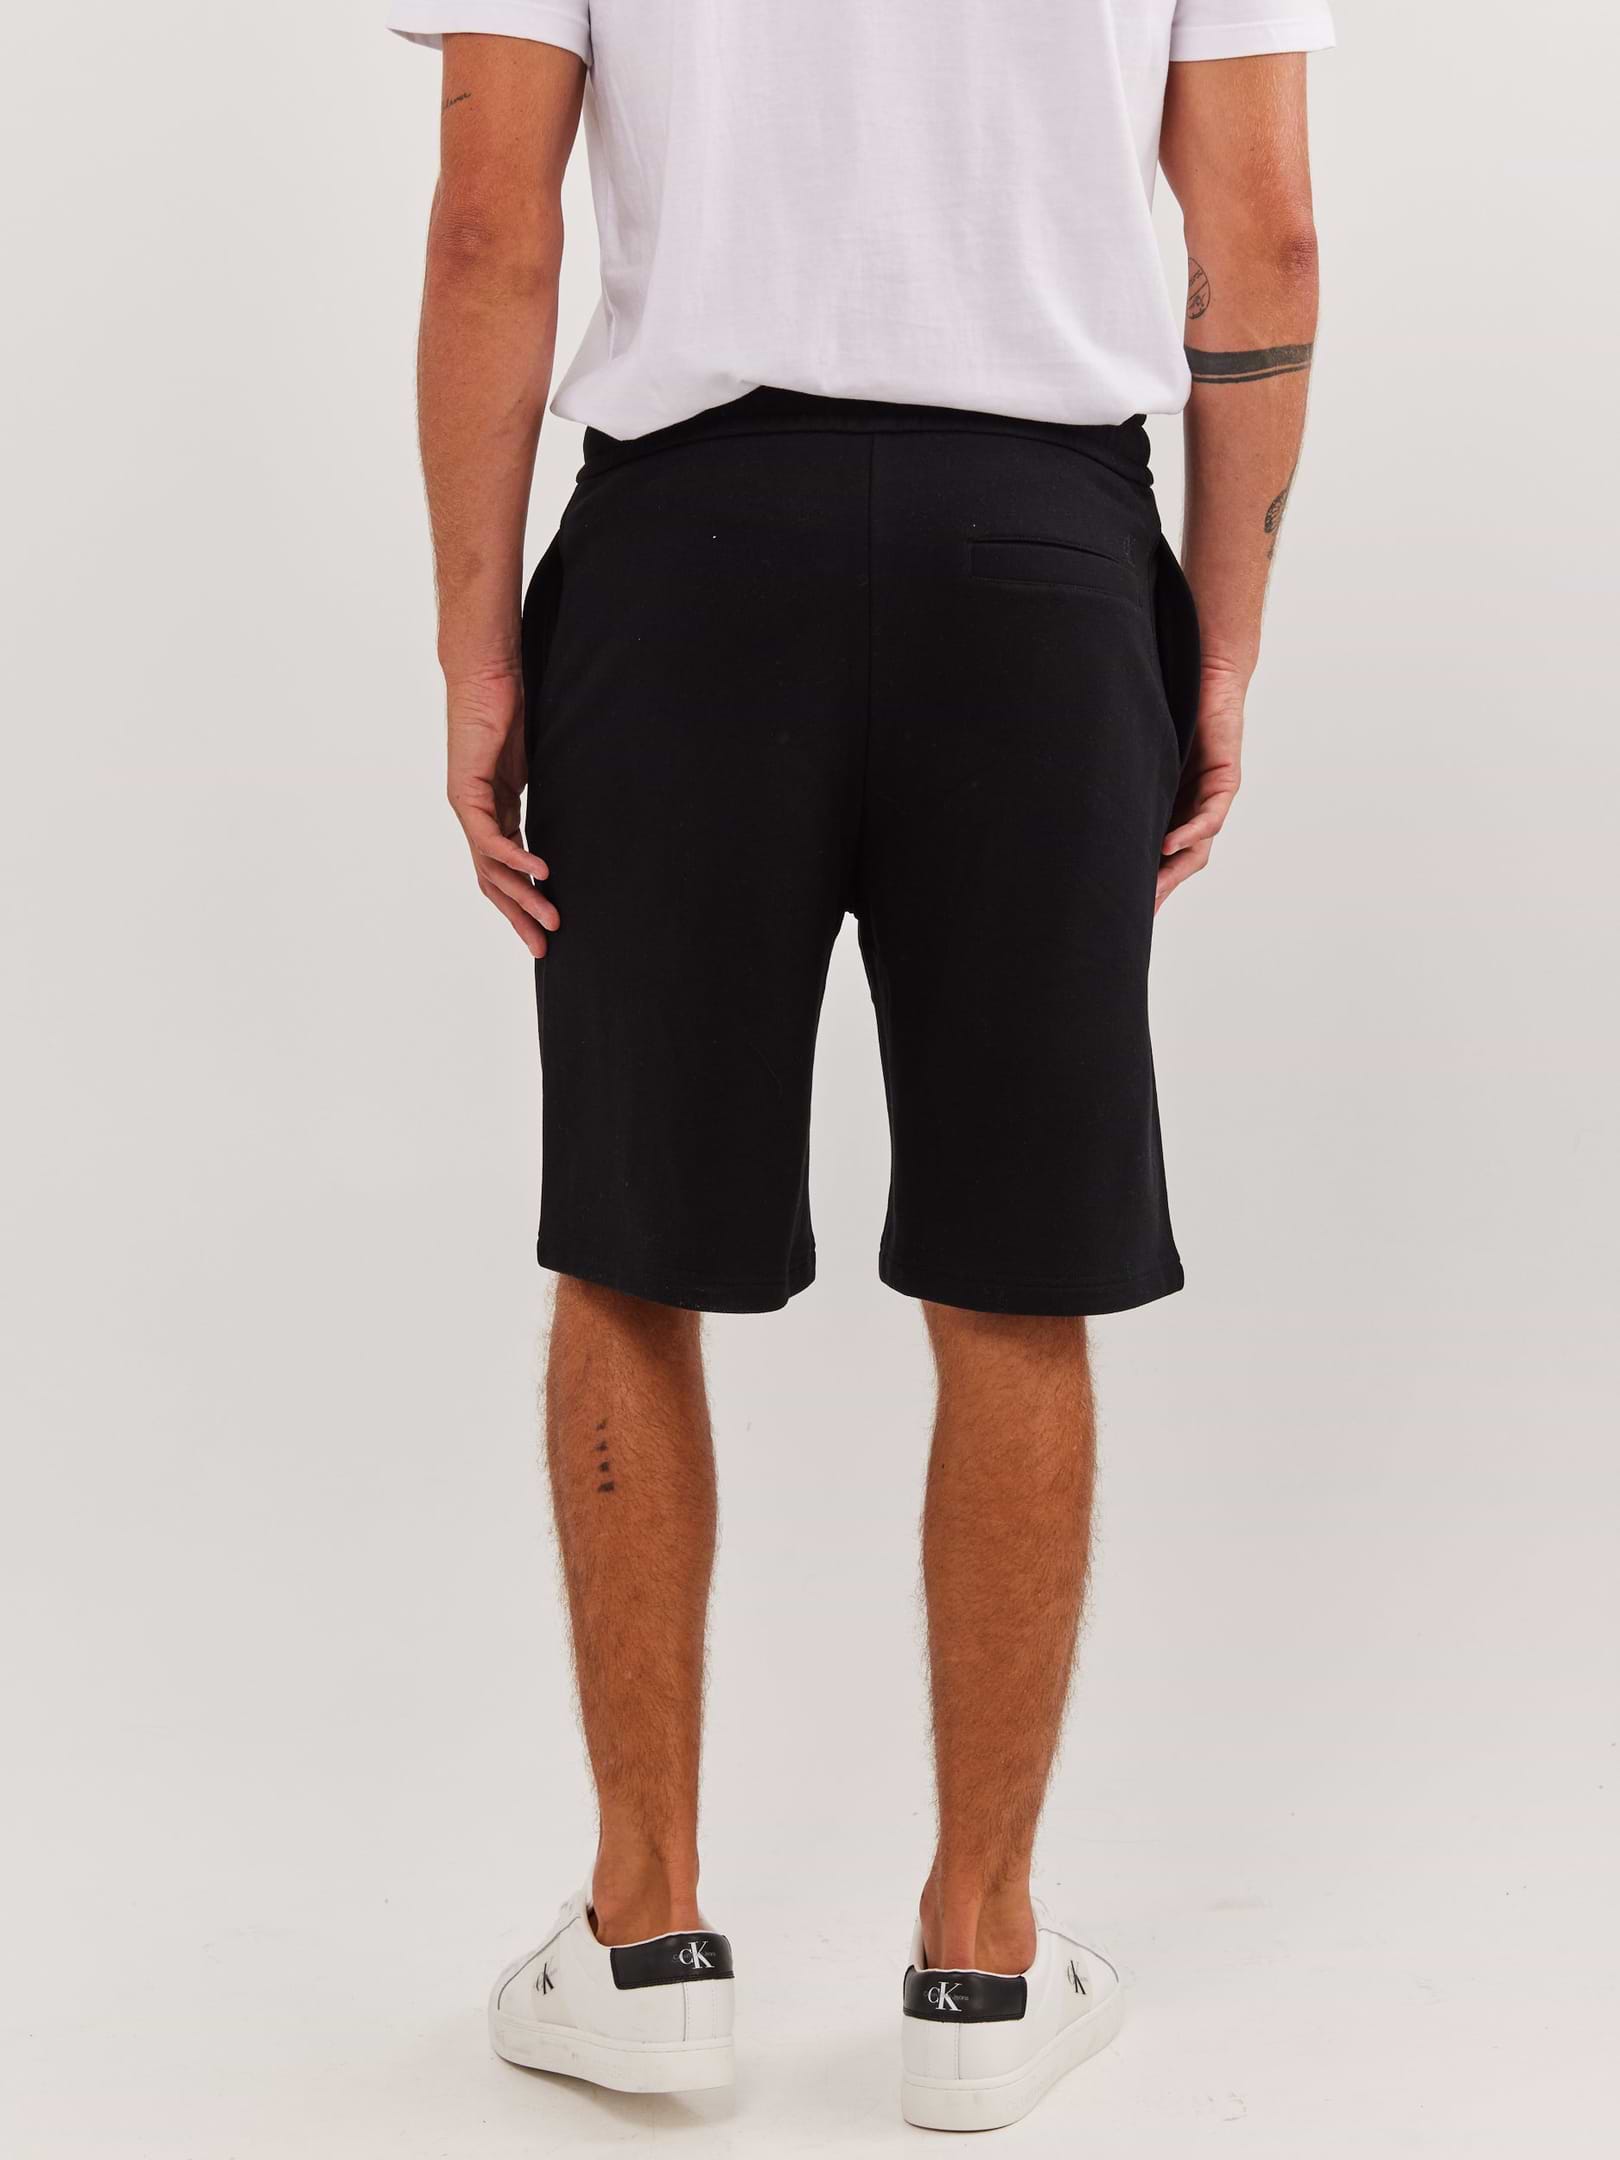 מכנסי ברמודה עם הדפס לוגו- Ck|קלווין קליין